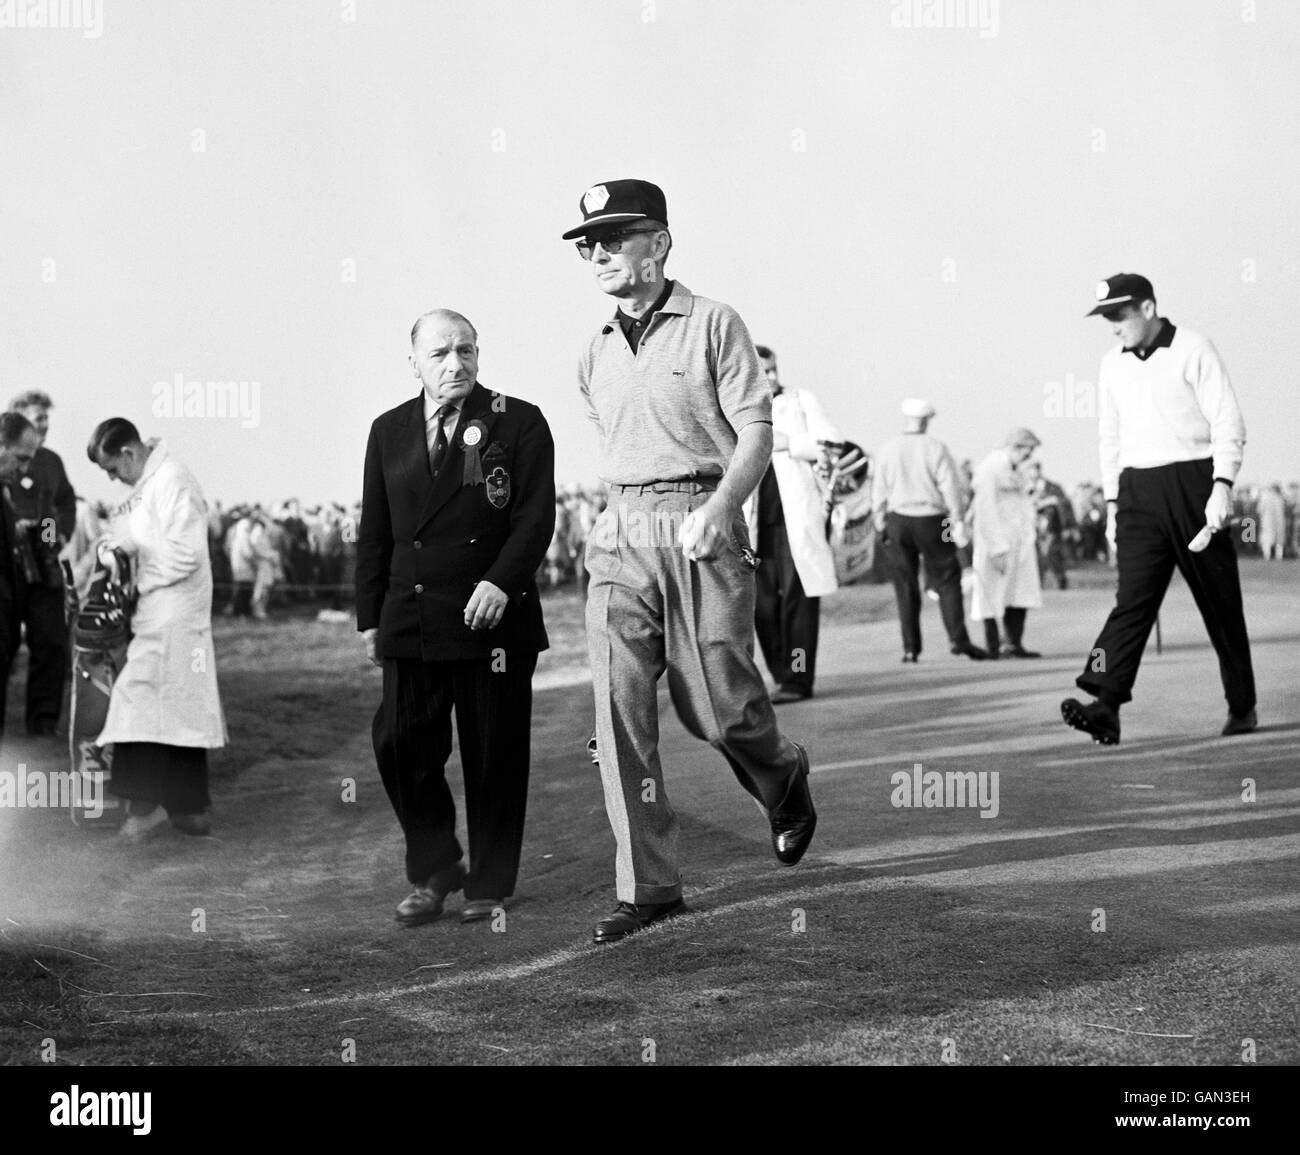 Jerry Barber, le capitaine des États-Unis, marchant du vert, suivi de son partenaire Dow Finsterwald. Banque D'Images